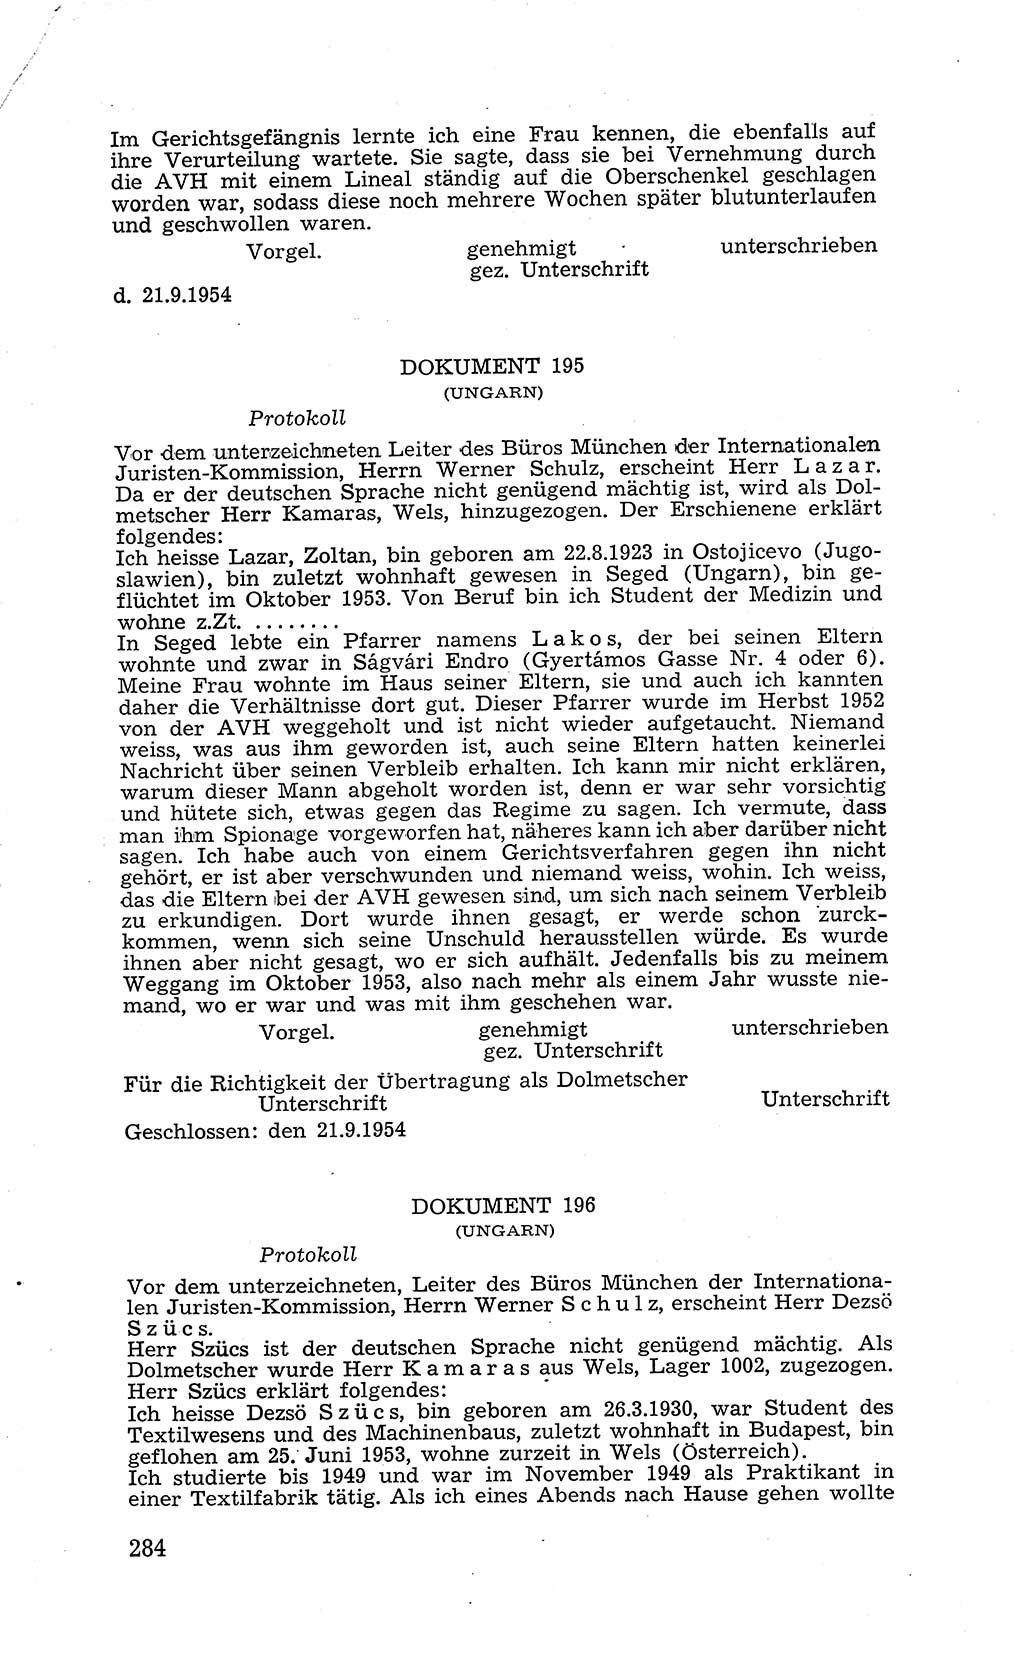 Recht in Fesseln, Dokumente, Internationale Juristen-Kommission [Bundesrepublik Deutschland (BRD)] 1955, Seite 284 (R. Dok. IJK BRD 1955, S. 284)